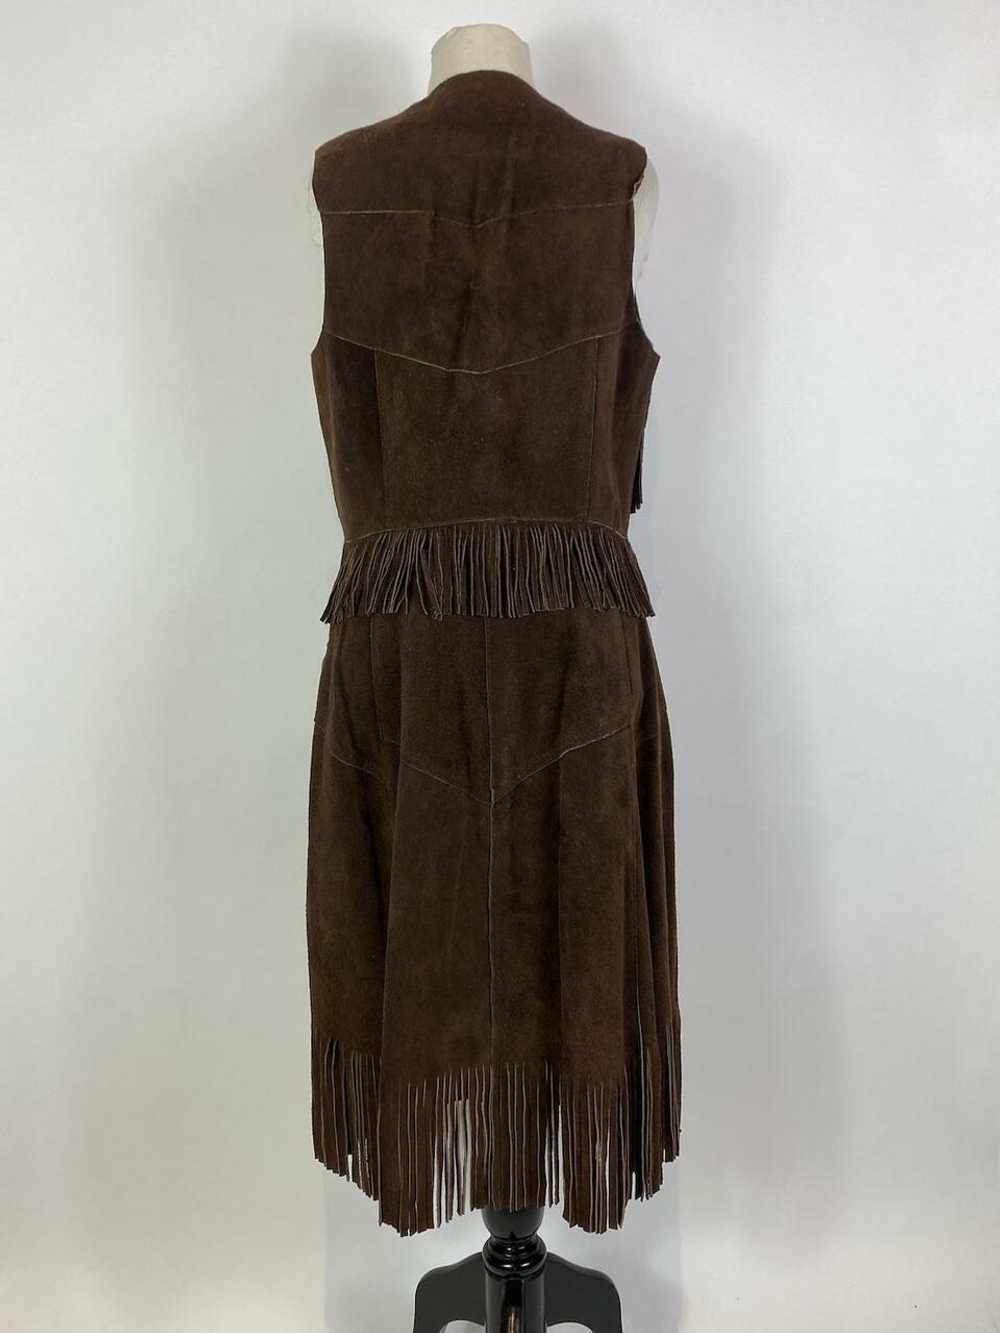 1970s Suede Leather Fringe Vest and Skirt Set - image 5